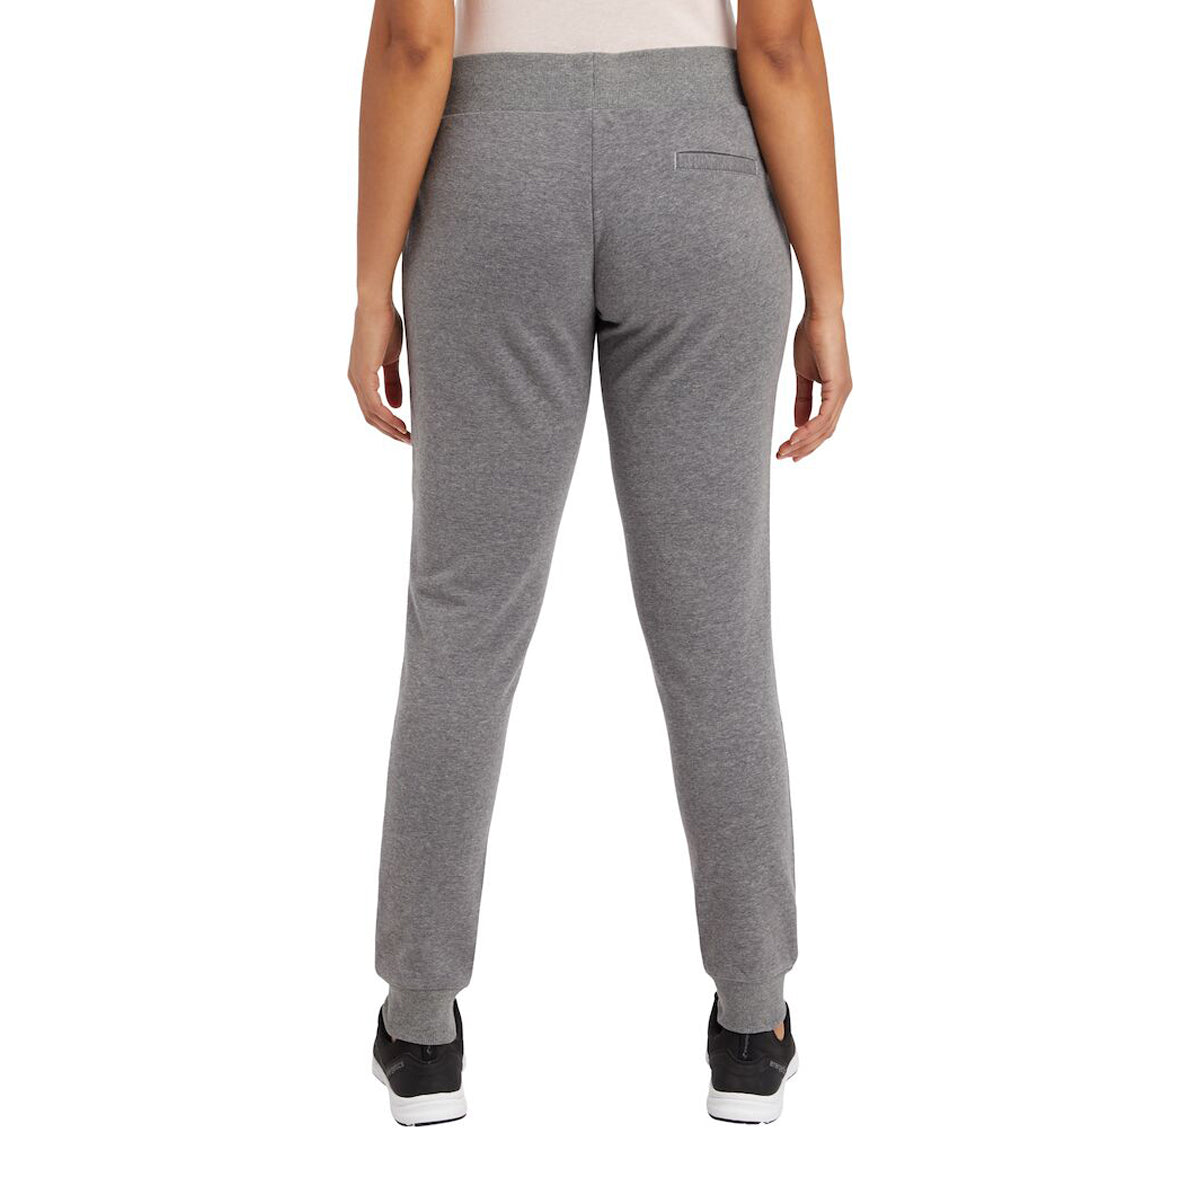 Energetics Hazka Sweatpants For Women, Grey